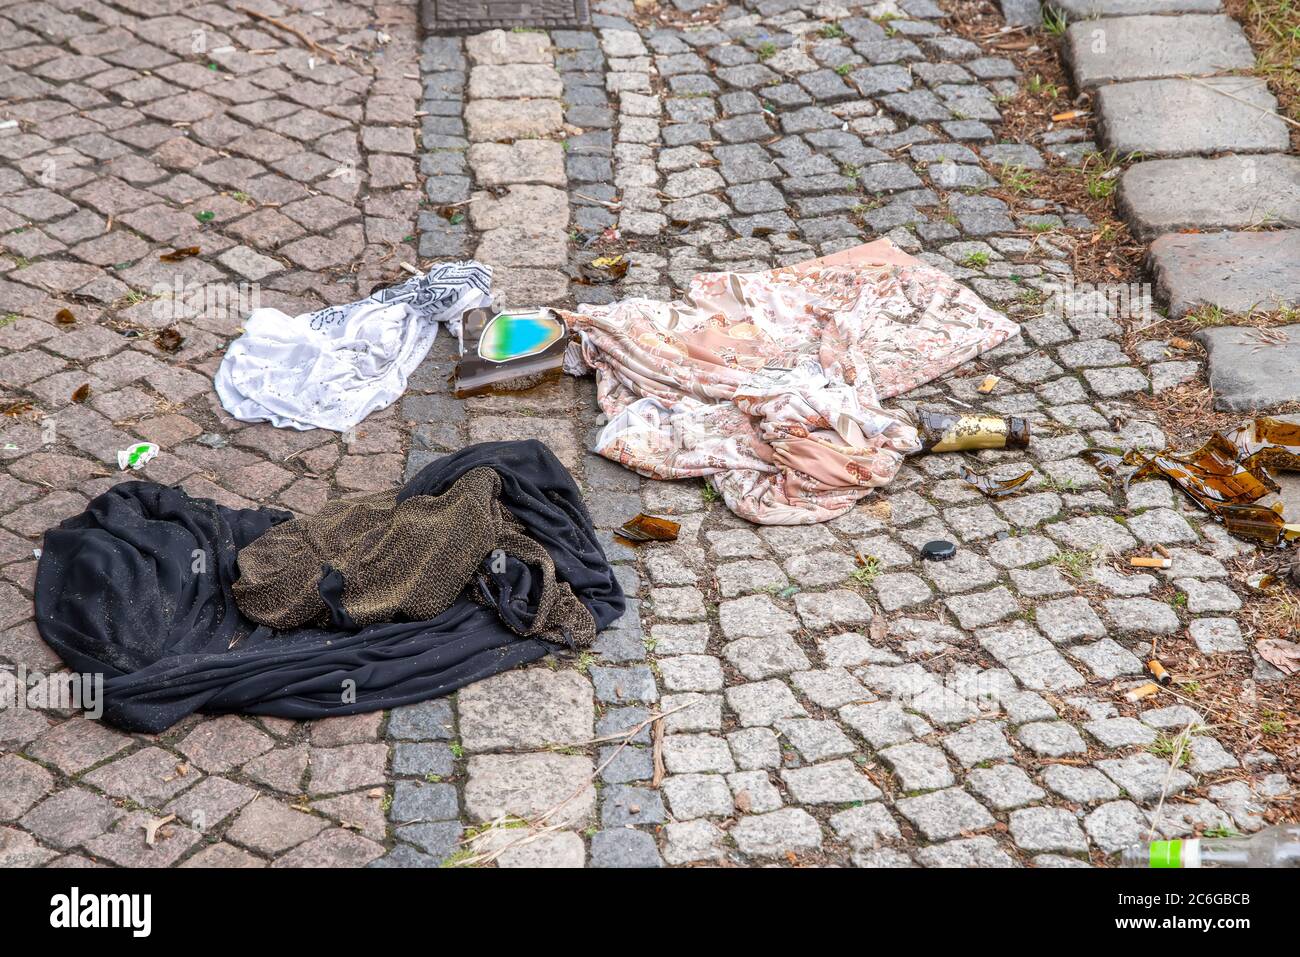 Verschmutzung - Abdeckung, T-Shirt, zerbrochene Bierflasche und Zigarrenbutts achtlos auf der Straße entsorgt. Stockfoto